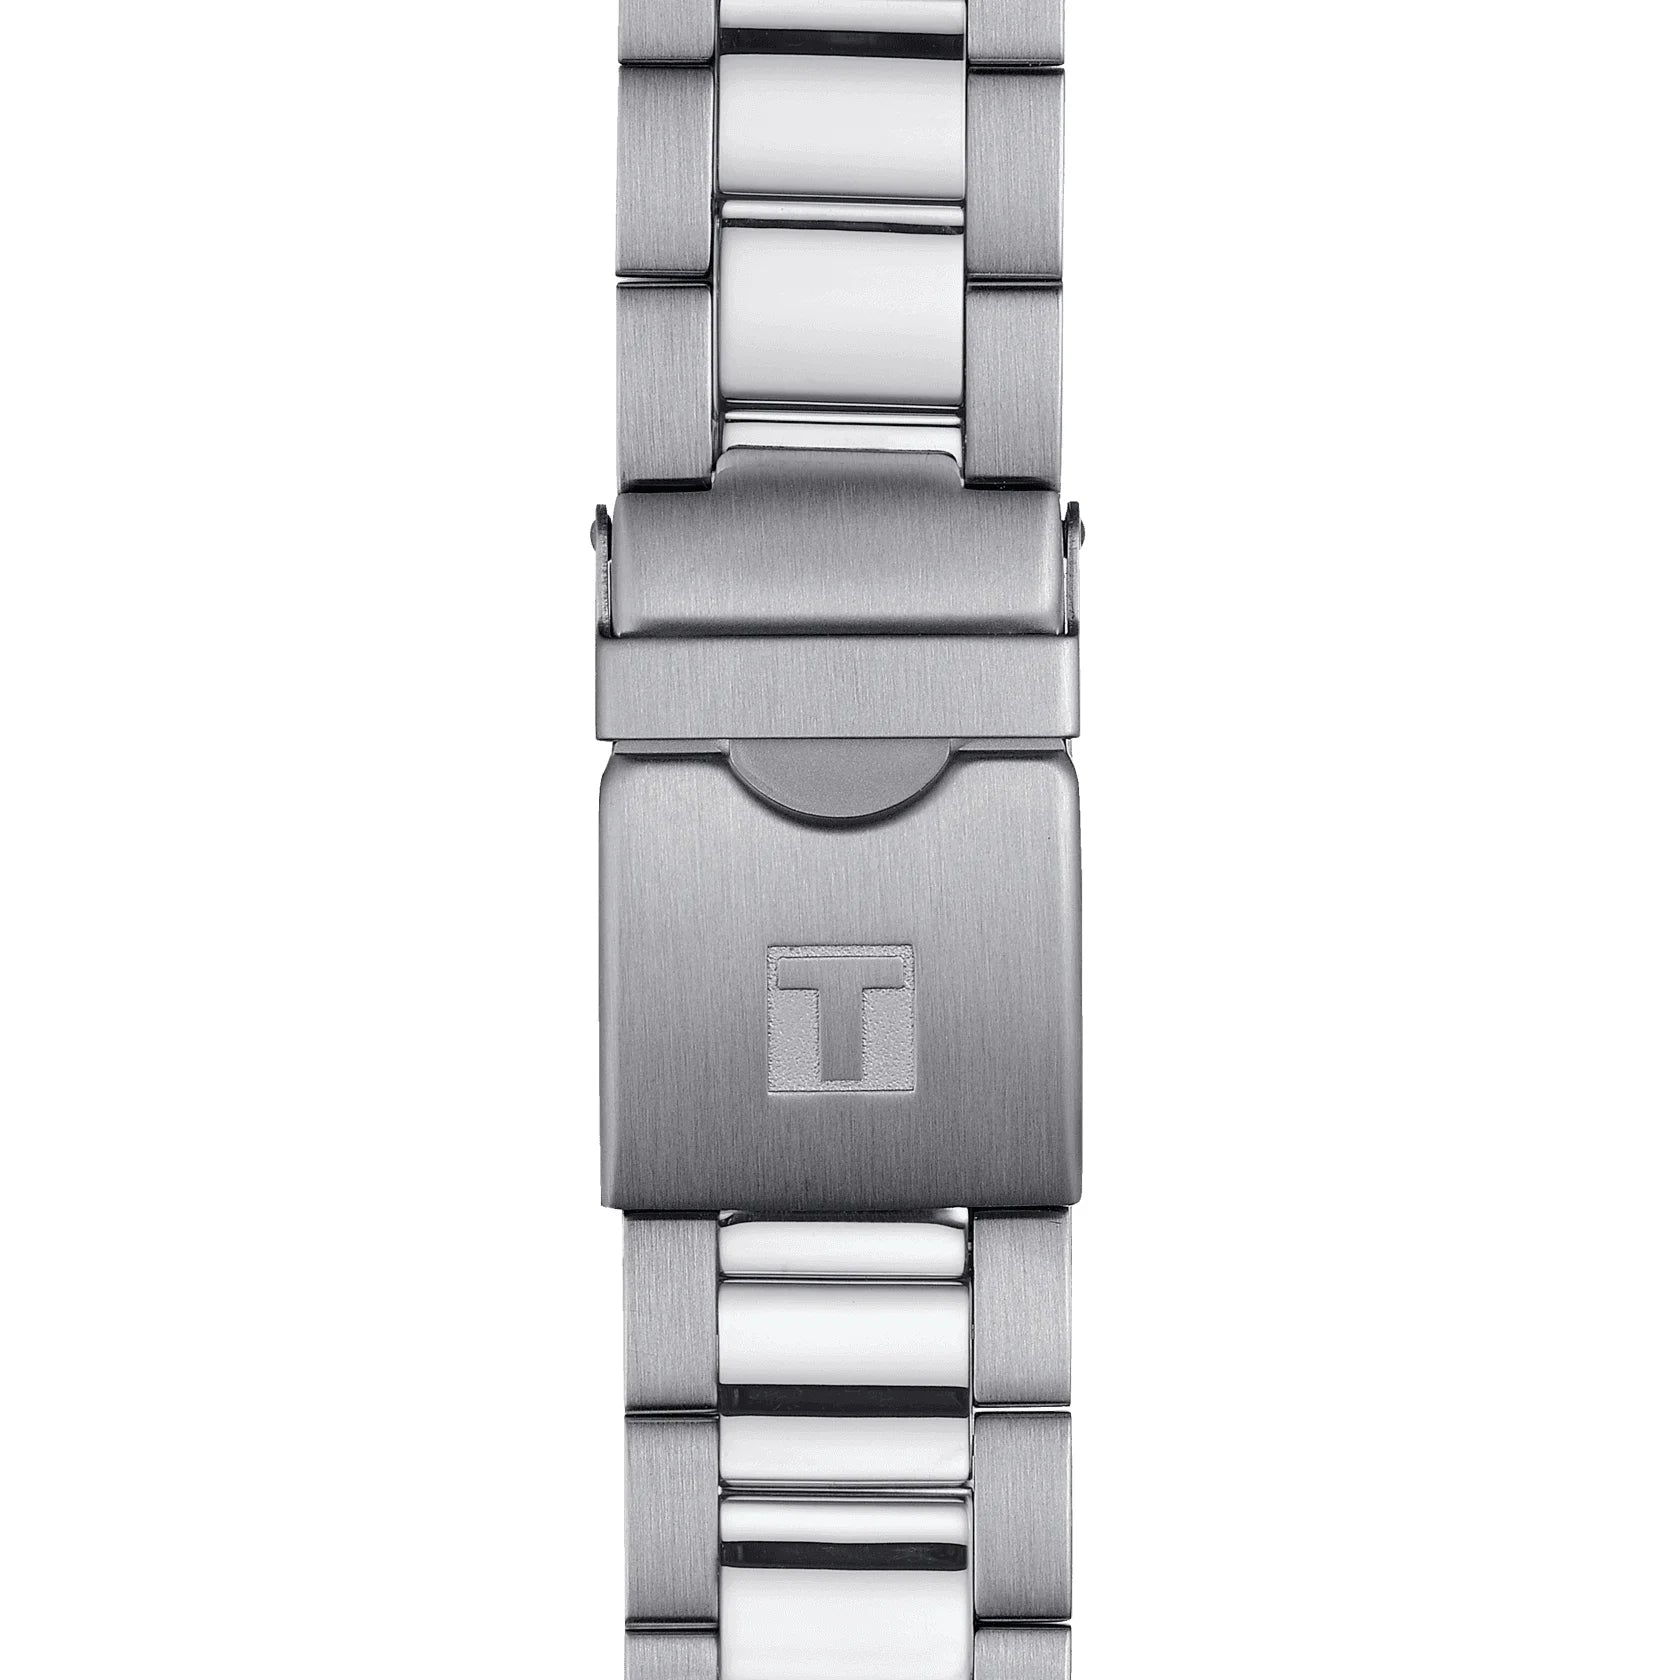 Tissot Seastar 1000 Chronograph Herrenarmbanduhr mit Edelstahl Armband und Blau Zifferblatt. Mit seinem Silber Farbe Armband sieht es sehr stilvoll aus.